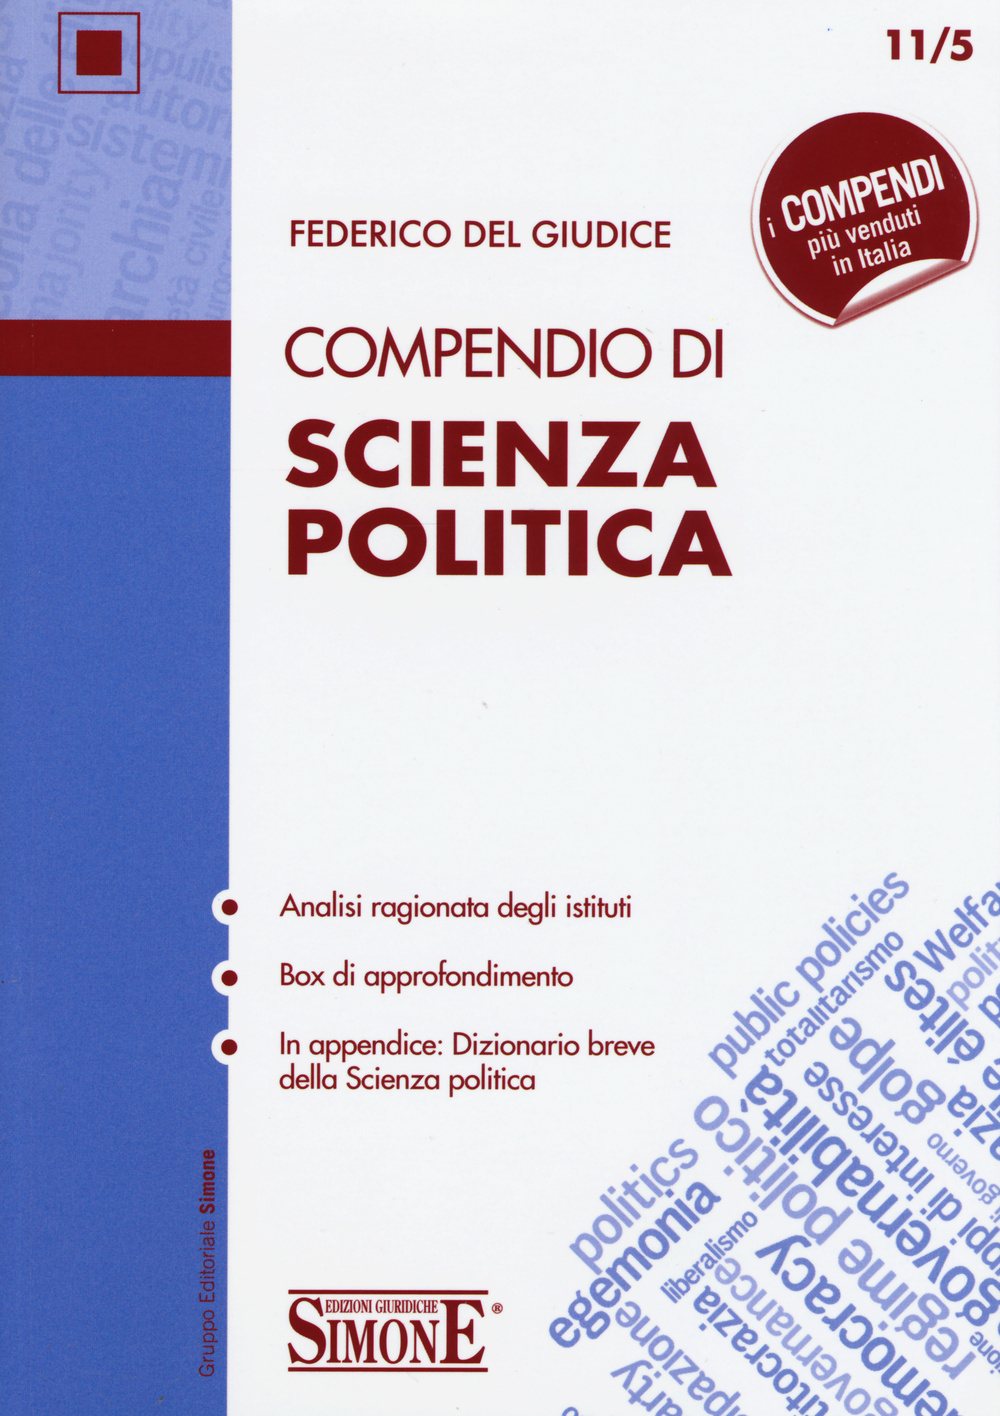 Libri Del Giudice Federico - Compendio Di Scienza Politica NUOVO SIGILLATO, EDIZIONE DEL 09/11/2015 SUBITO DISPONIBILE